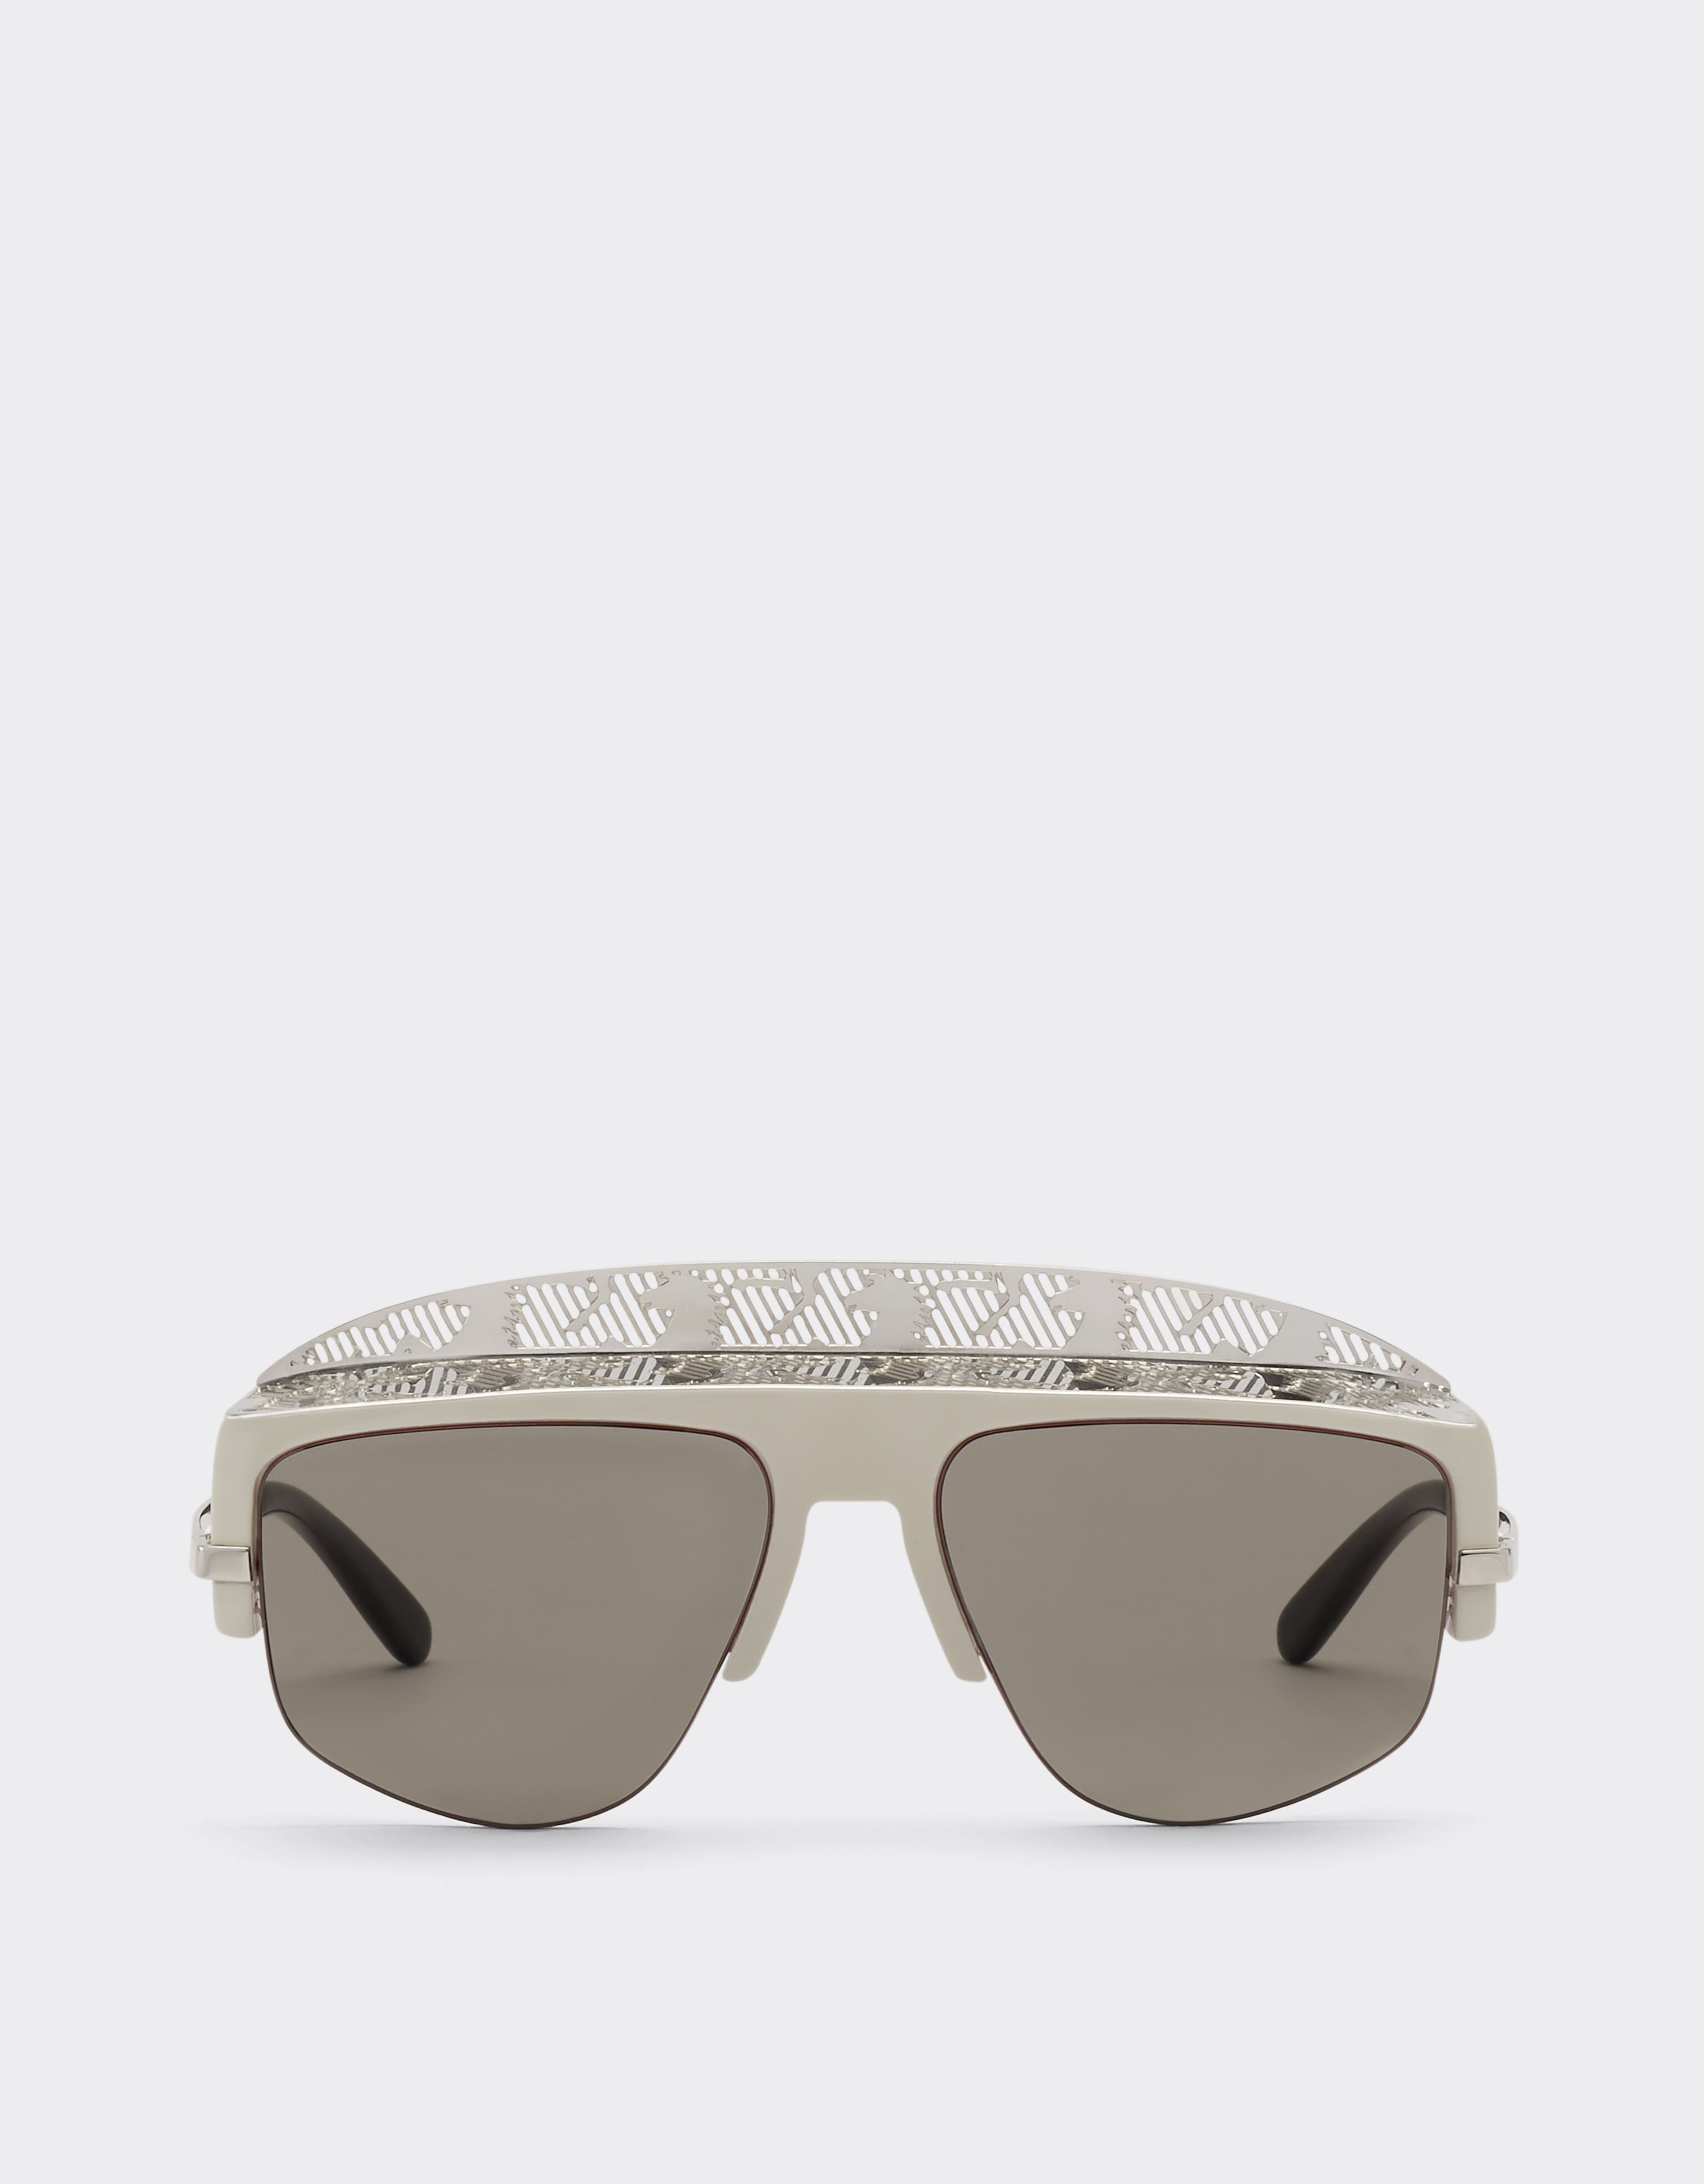 Ferrari Ferrari sunglasses with silver mirror lens Silver F1247f